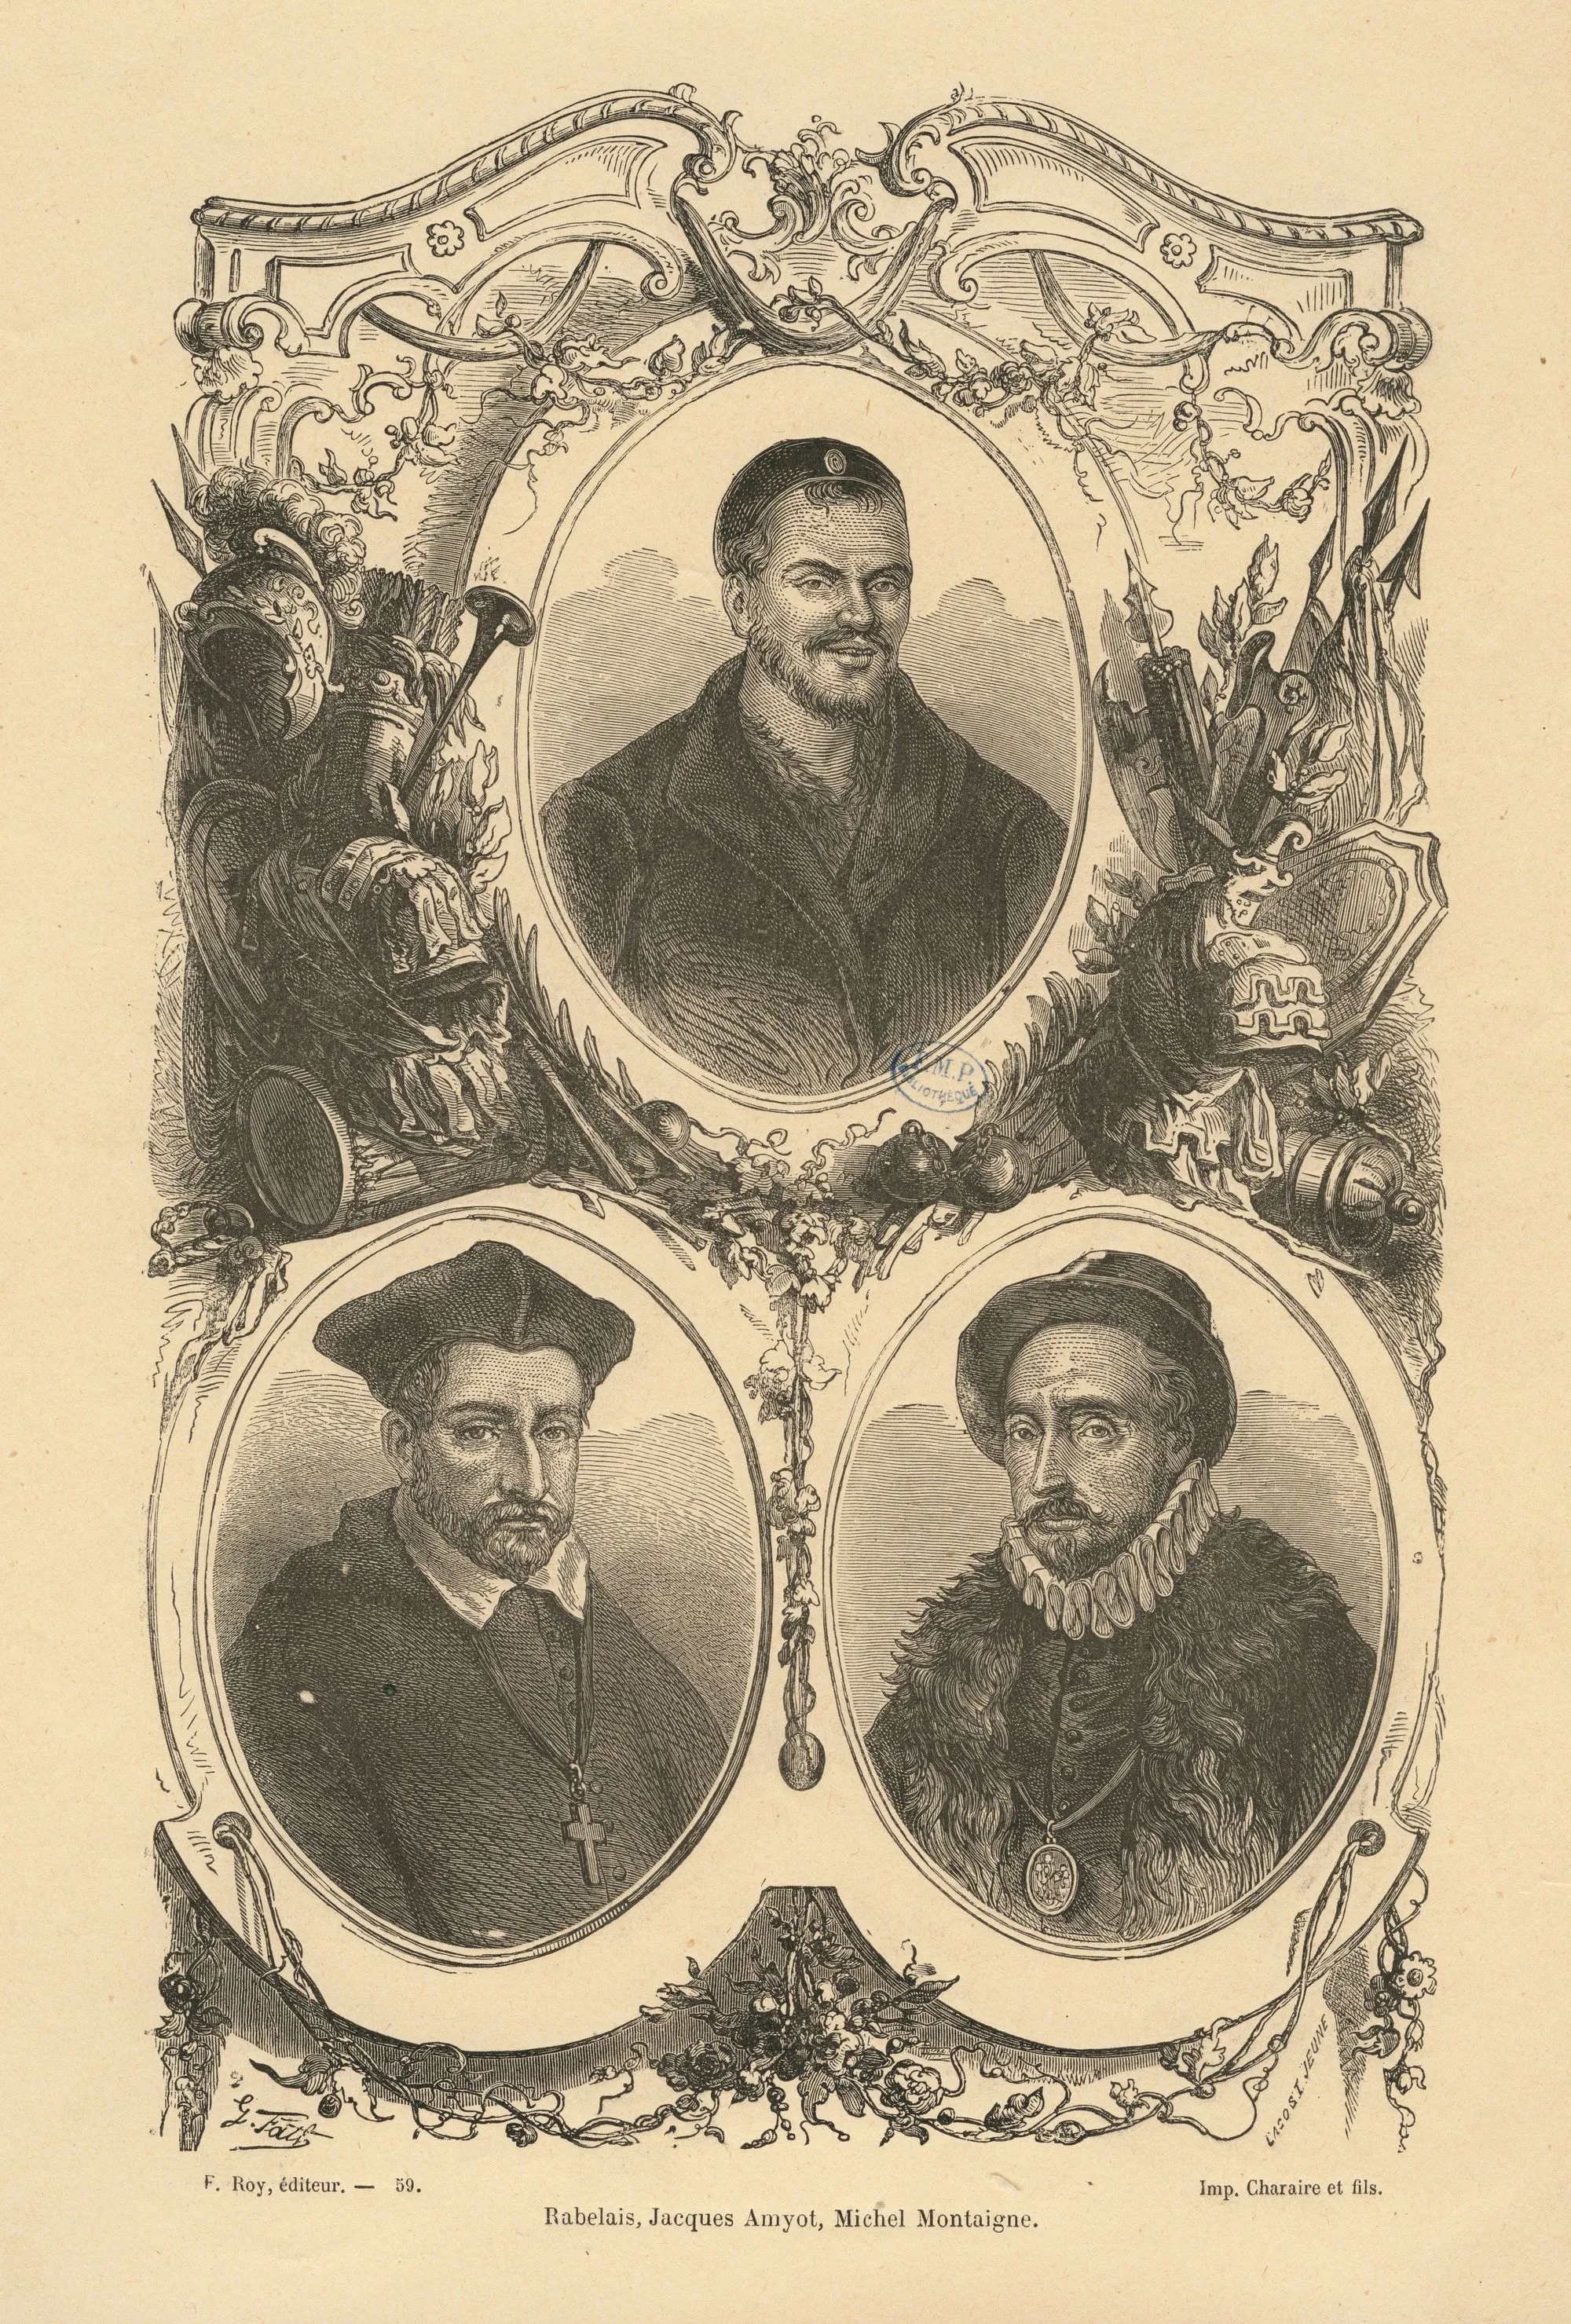 François Rabelais (en haut) et Jacques Amyot (en bas, à gauche), desssin de G. Fath, gravure de Lacoste Jeune, XIXe siècle.